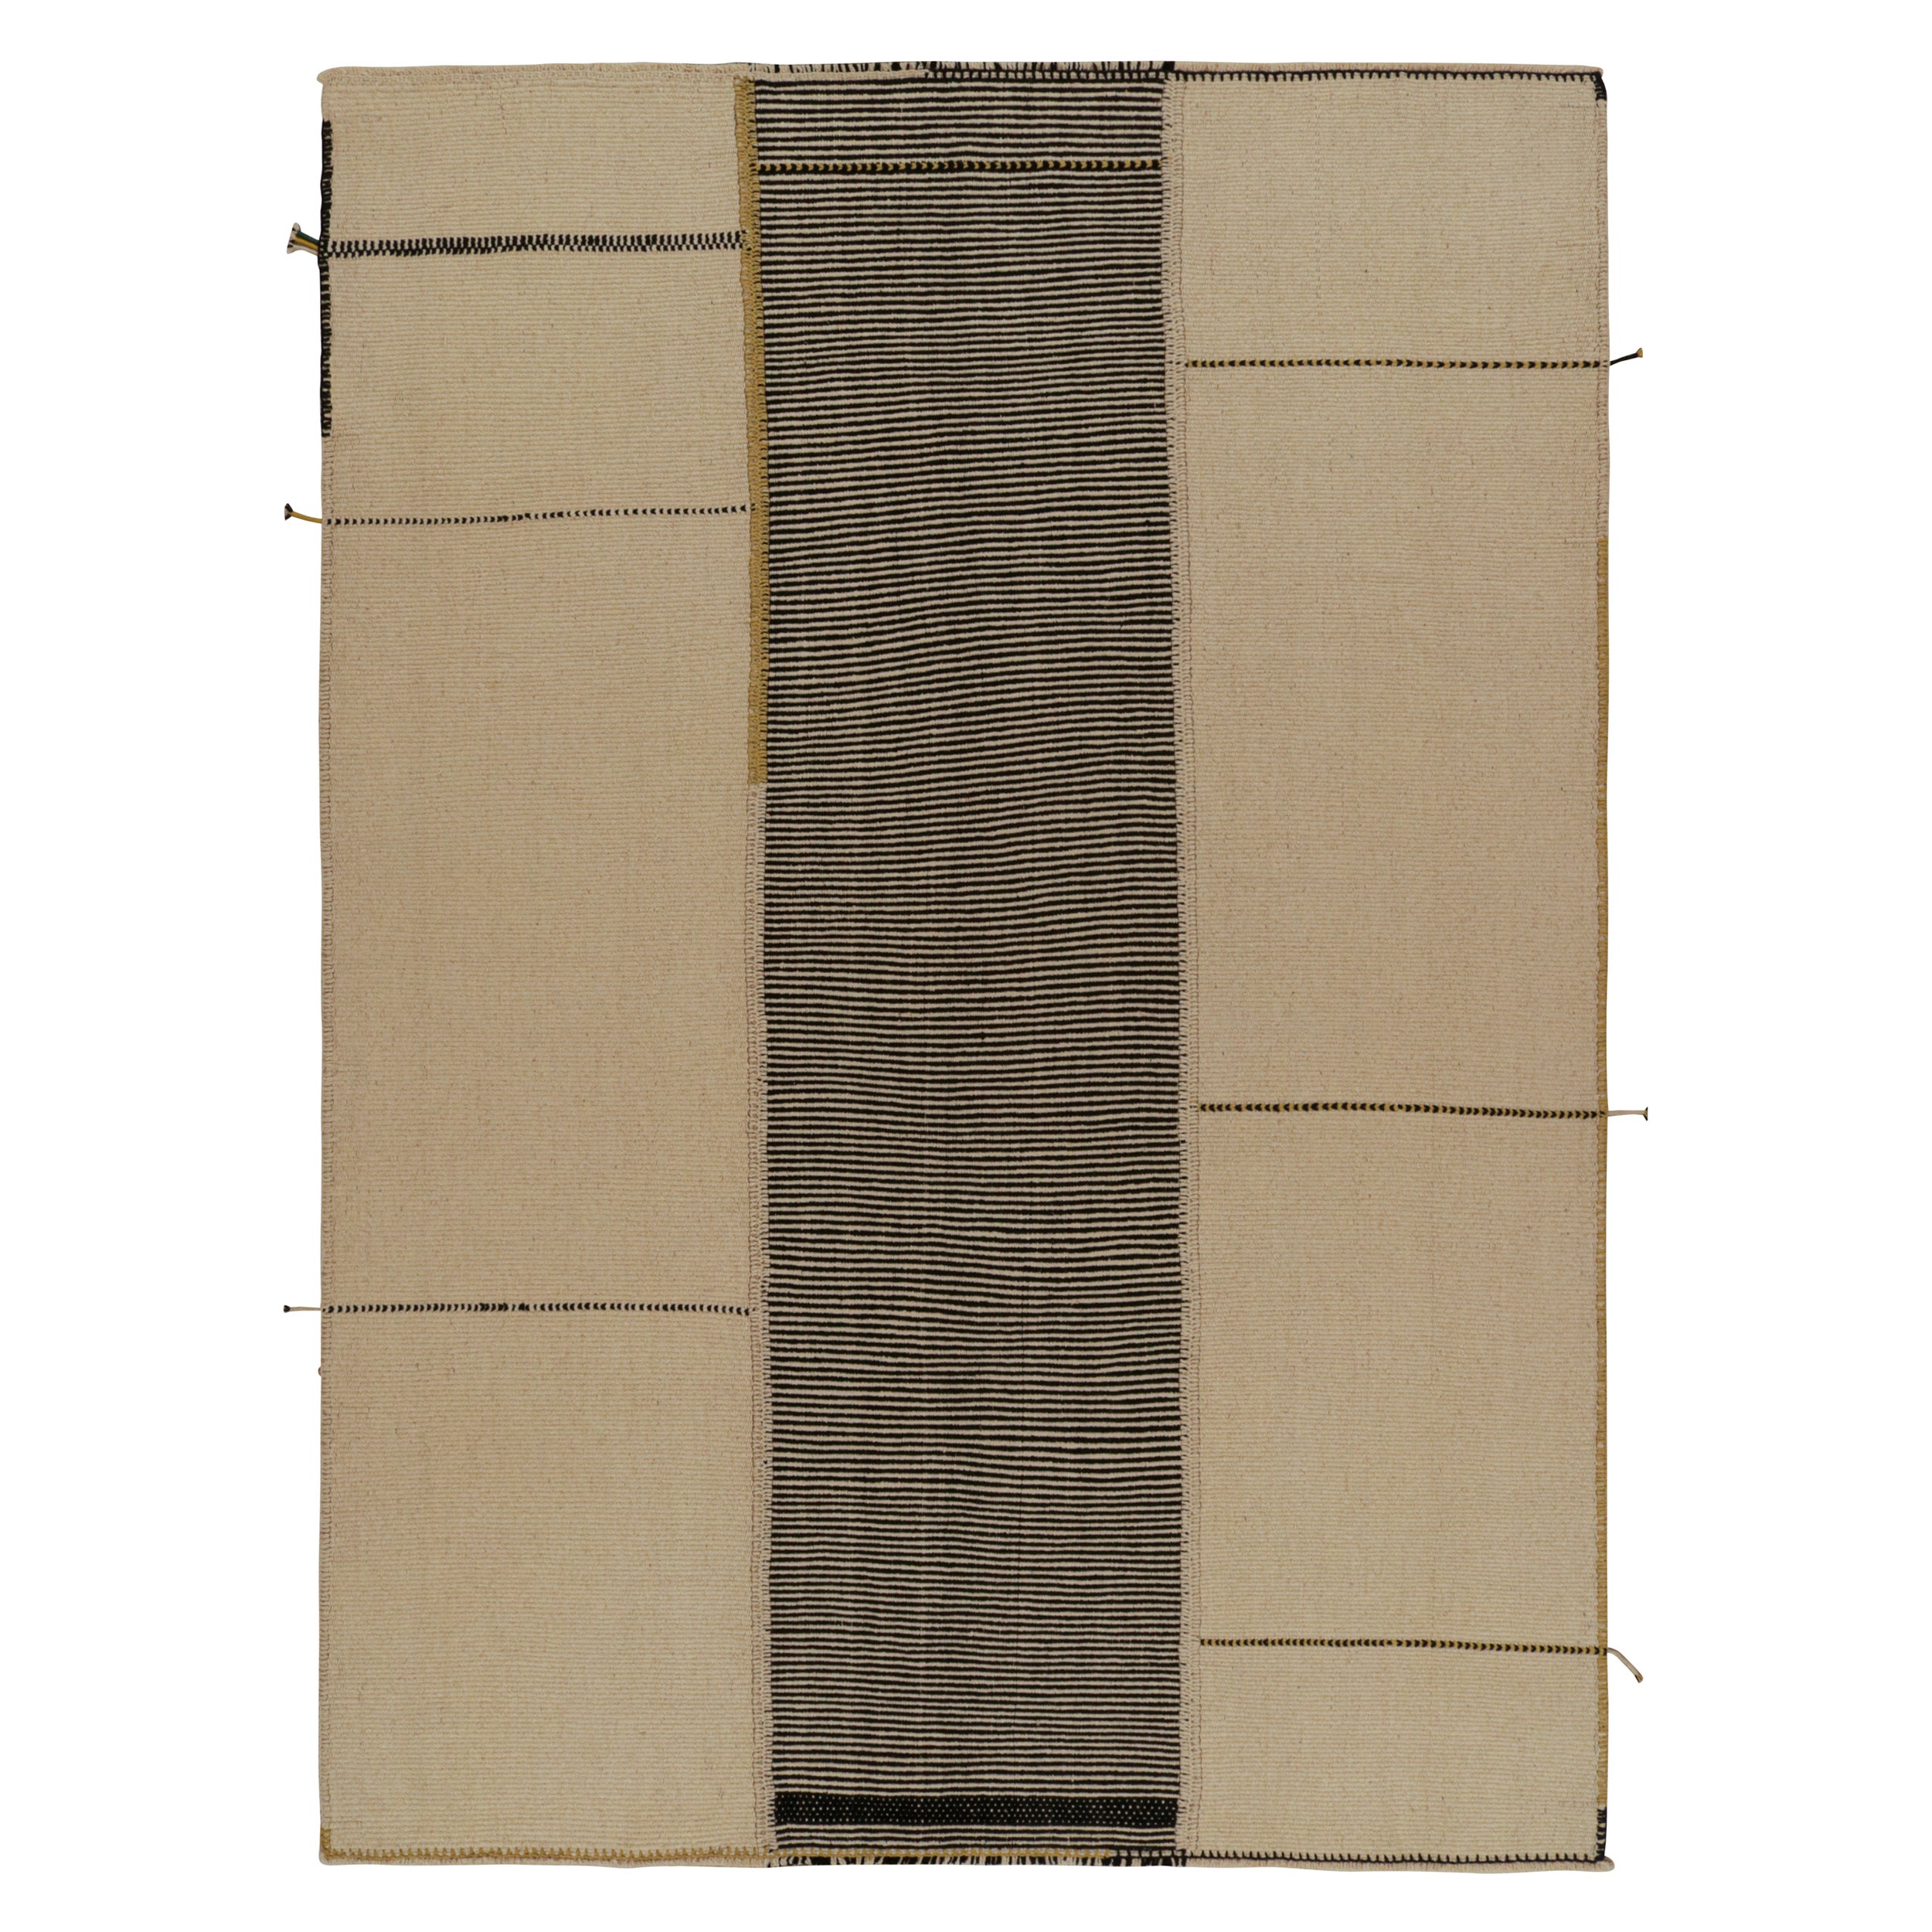 Rug & Kilim's Modern Kilim Rug in Beige, Black & Gold Textural Stripes (tapis moderne en Kilim beige, noir et or) 